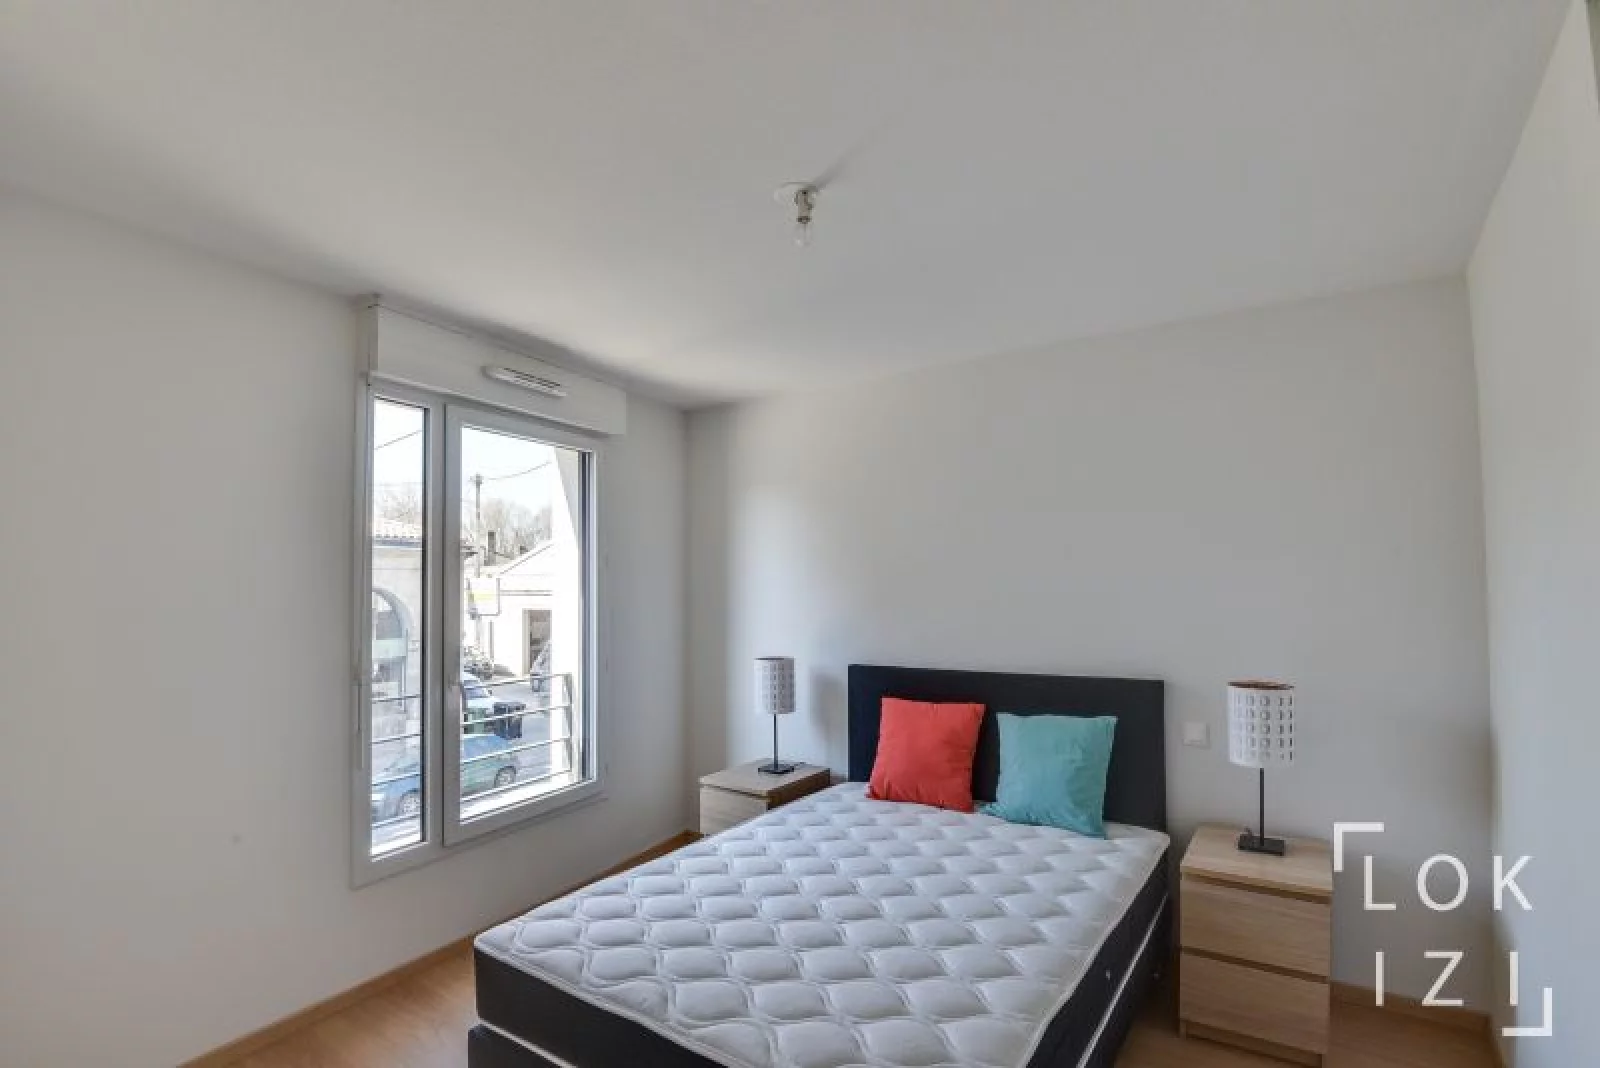 Location appartement meublé 2 pièces 42m² (Bordeaux - Bacalan)